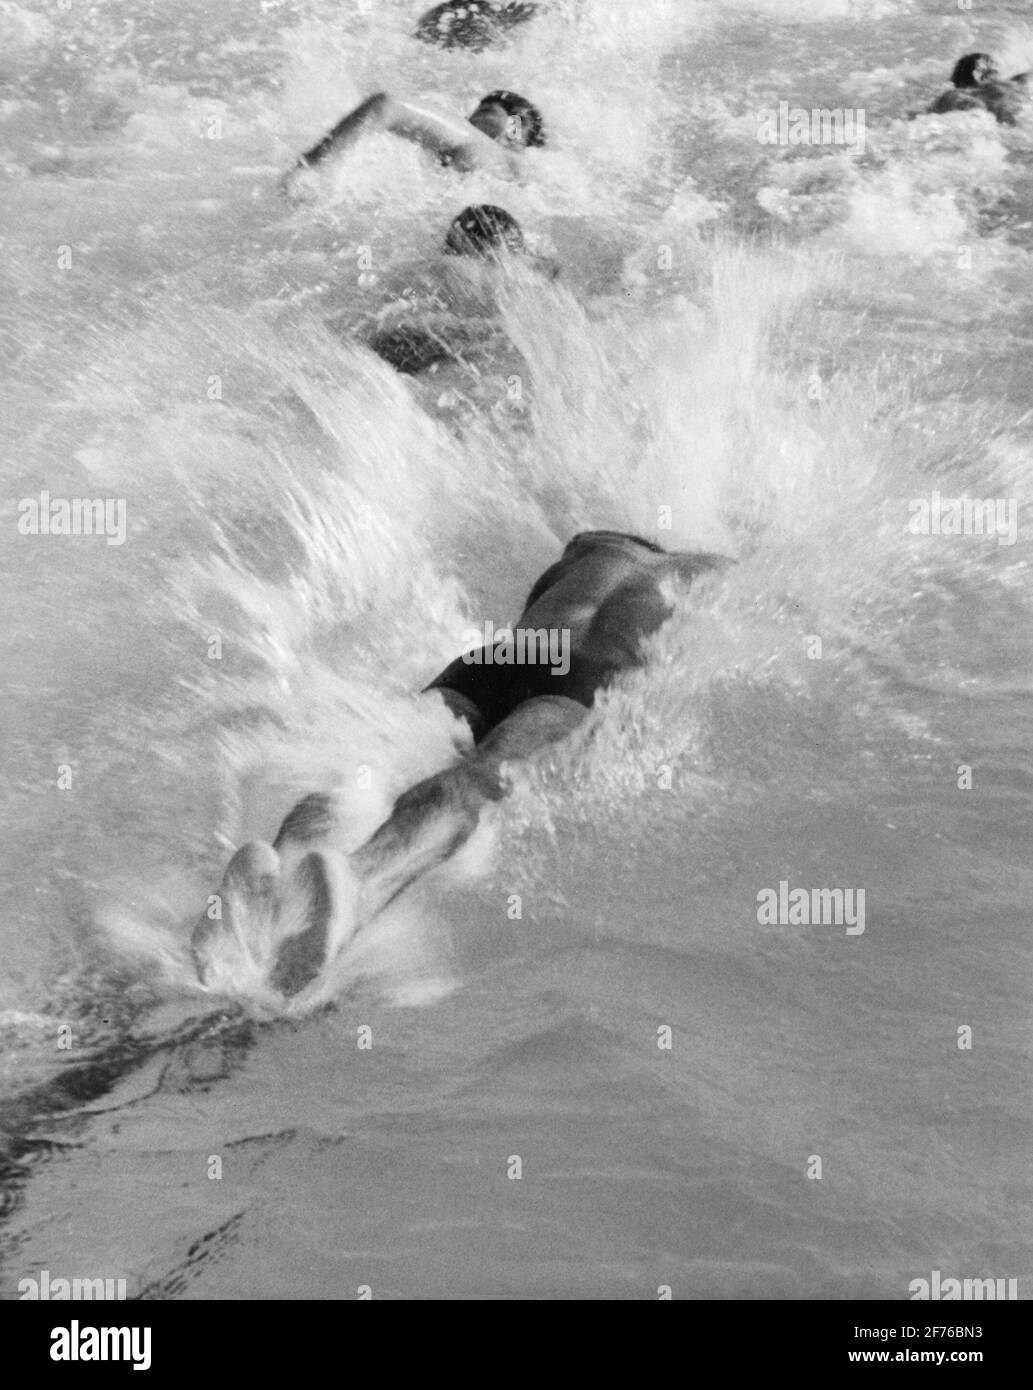 Racer si tuffa in una piscina mentre fa giri in un relè di nuoto. Foto Stock